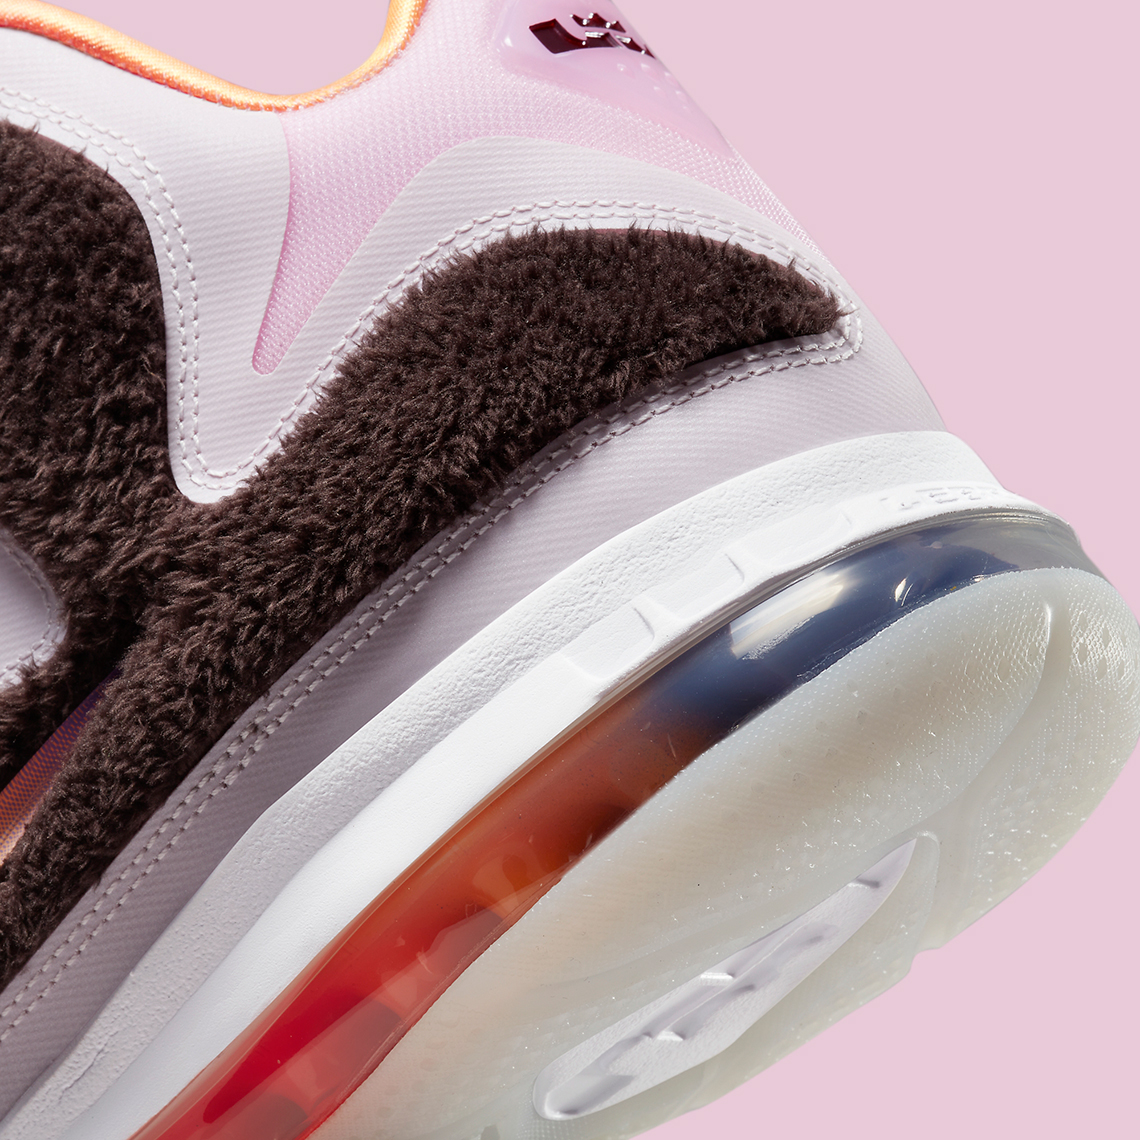 1652457936 452 Imagenes oficiales de las Nike LeBron 9 Regal Pink